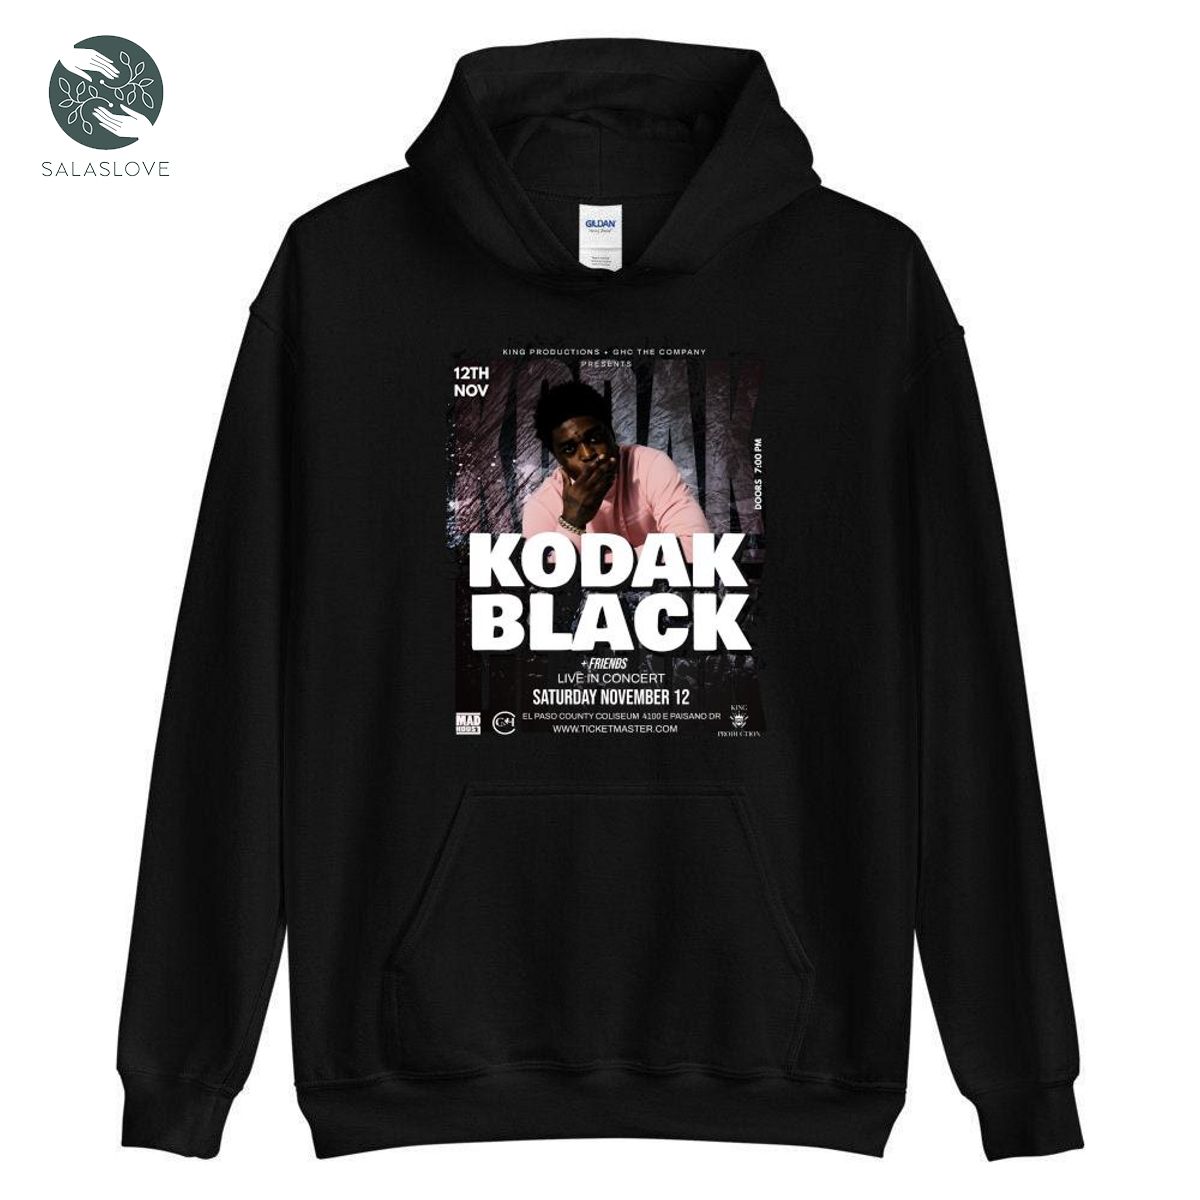 Kodak Black Live In Concert Music Unisex Shirt Gift For Fan